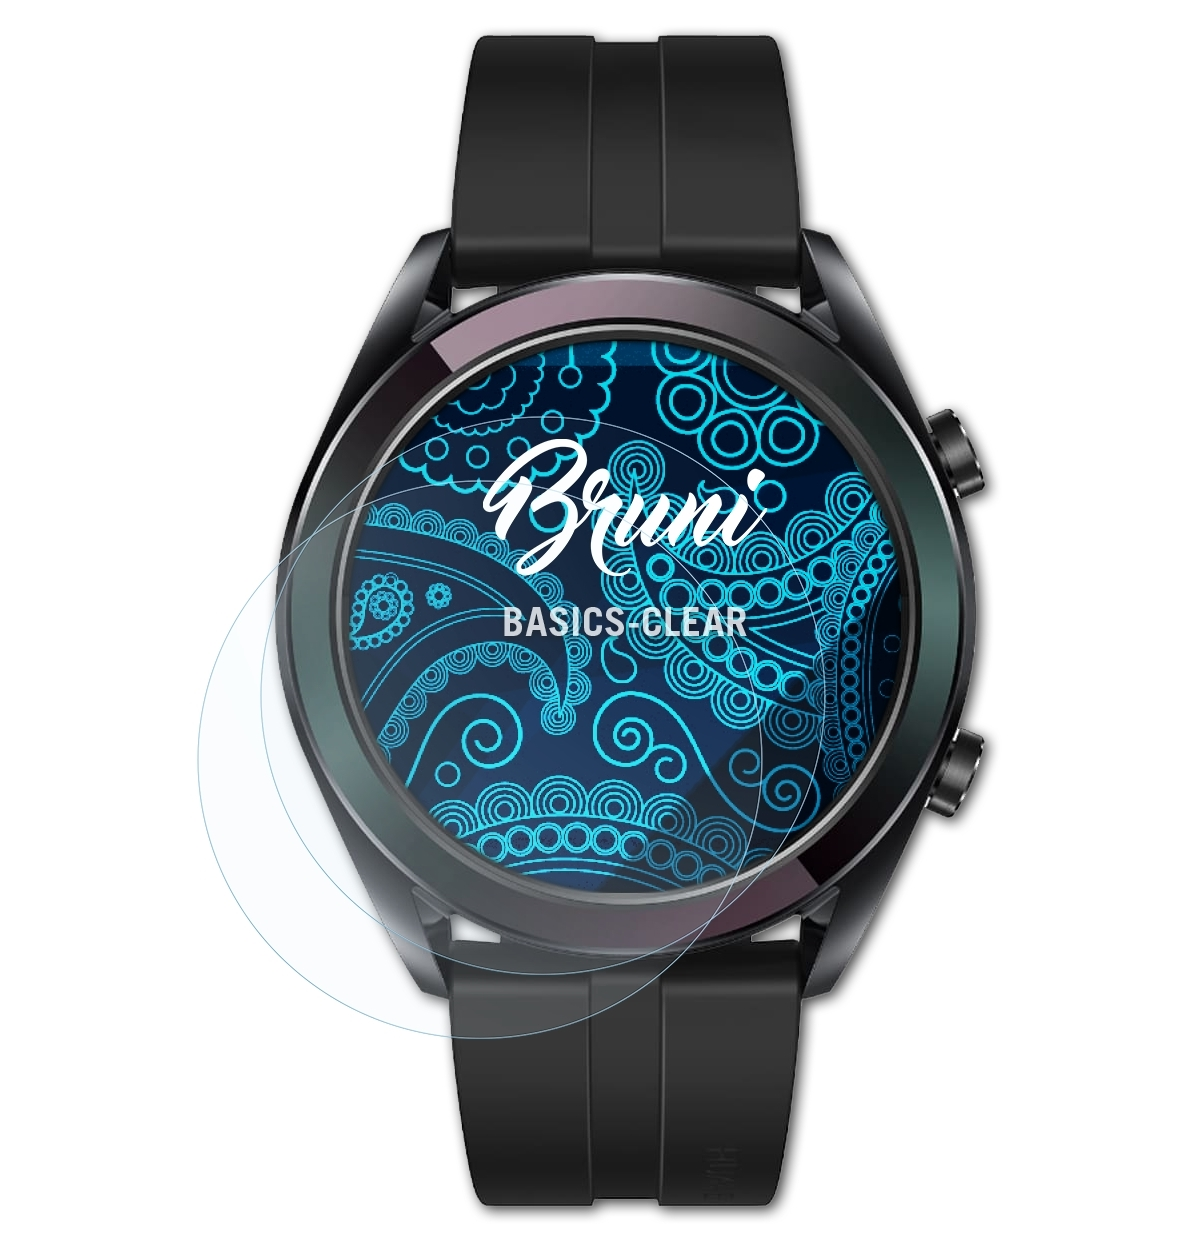 BRUNI 2x Basics-Clear Schutzfolie(für Elegant) Watch GT Huawei